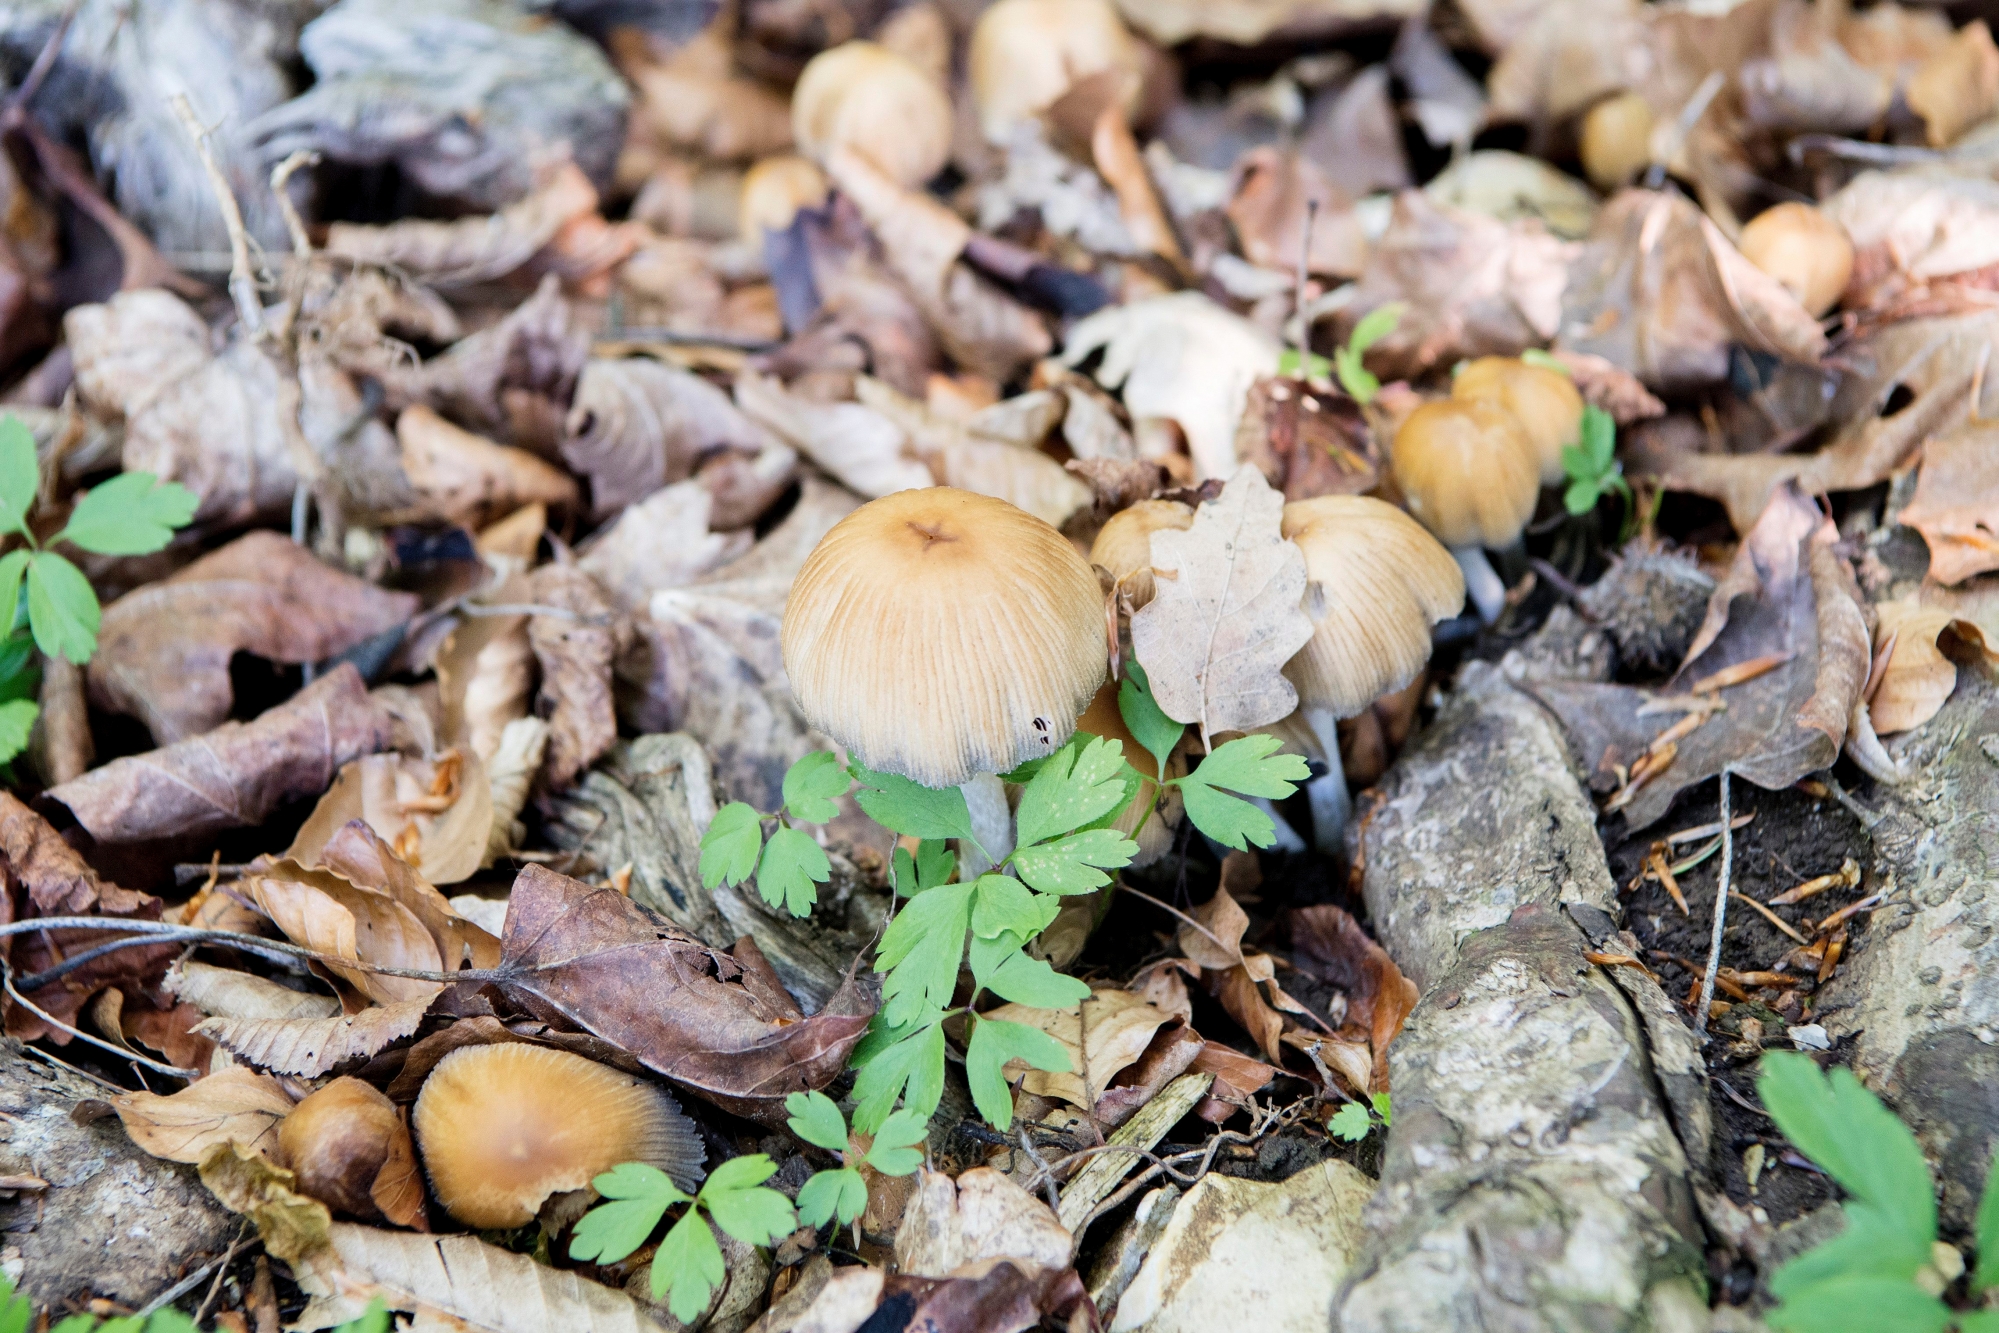 Fete de la nature: balade autour des champignons

Neuchatel, 21 05  2017
Photo : © David Marchon FETE DE LA NATURE